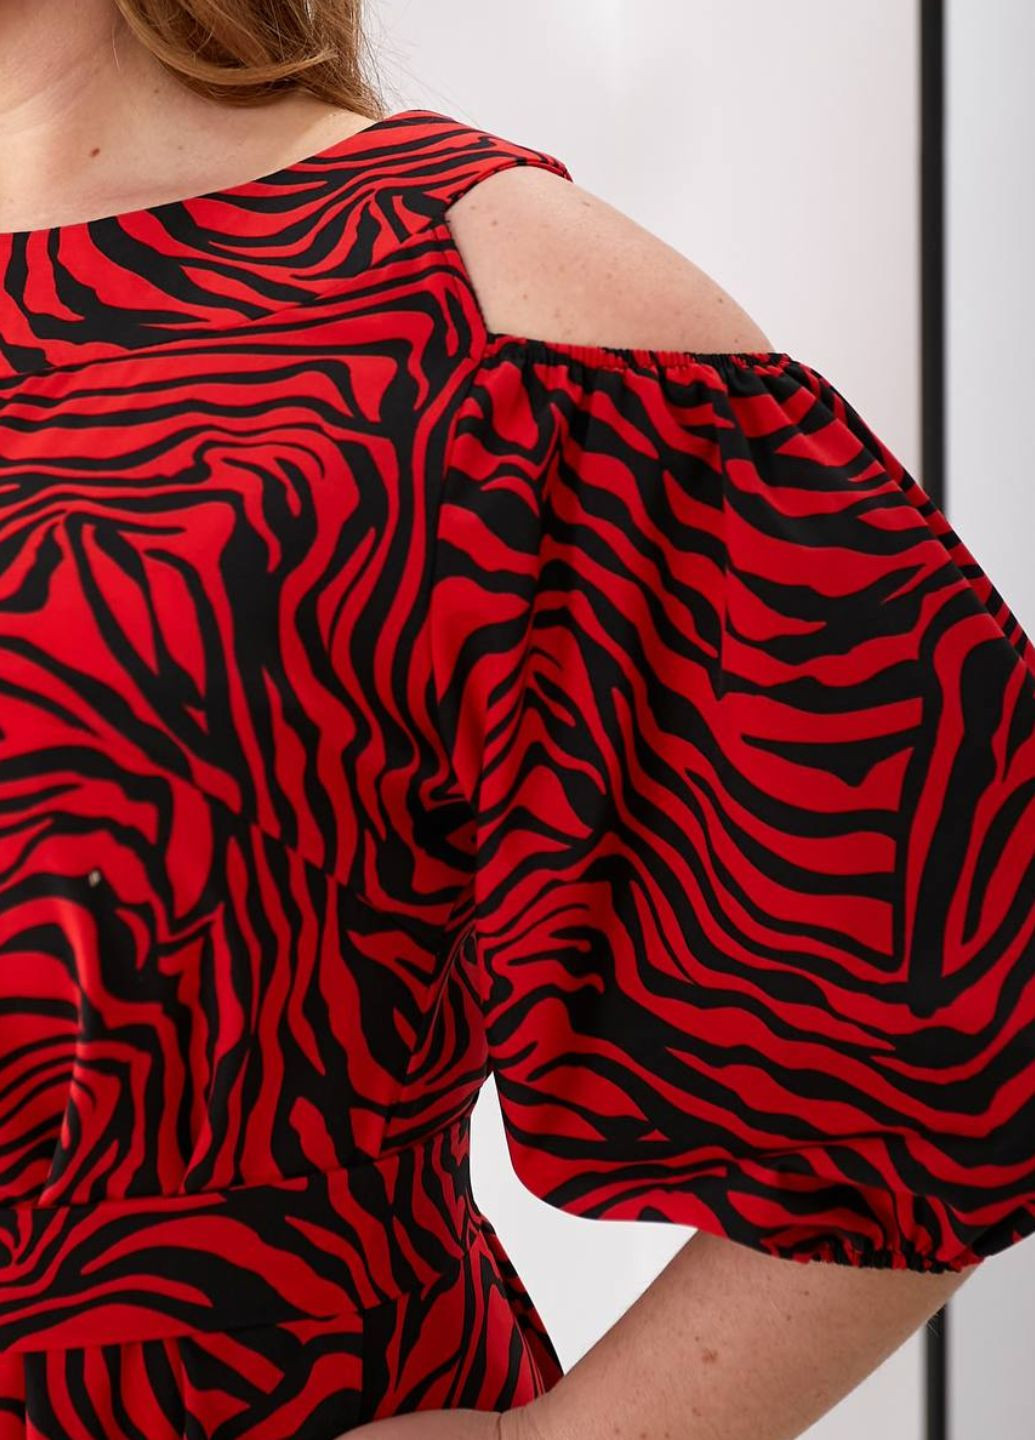 Червона повсякденний сукня з принтом зебри та відкритими плечима No Brand зебра